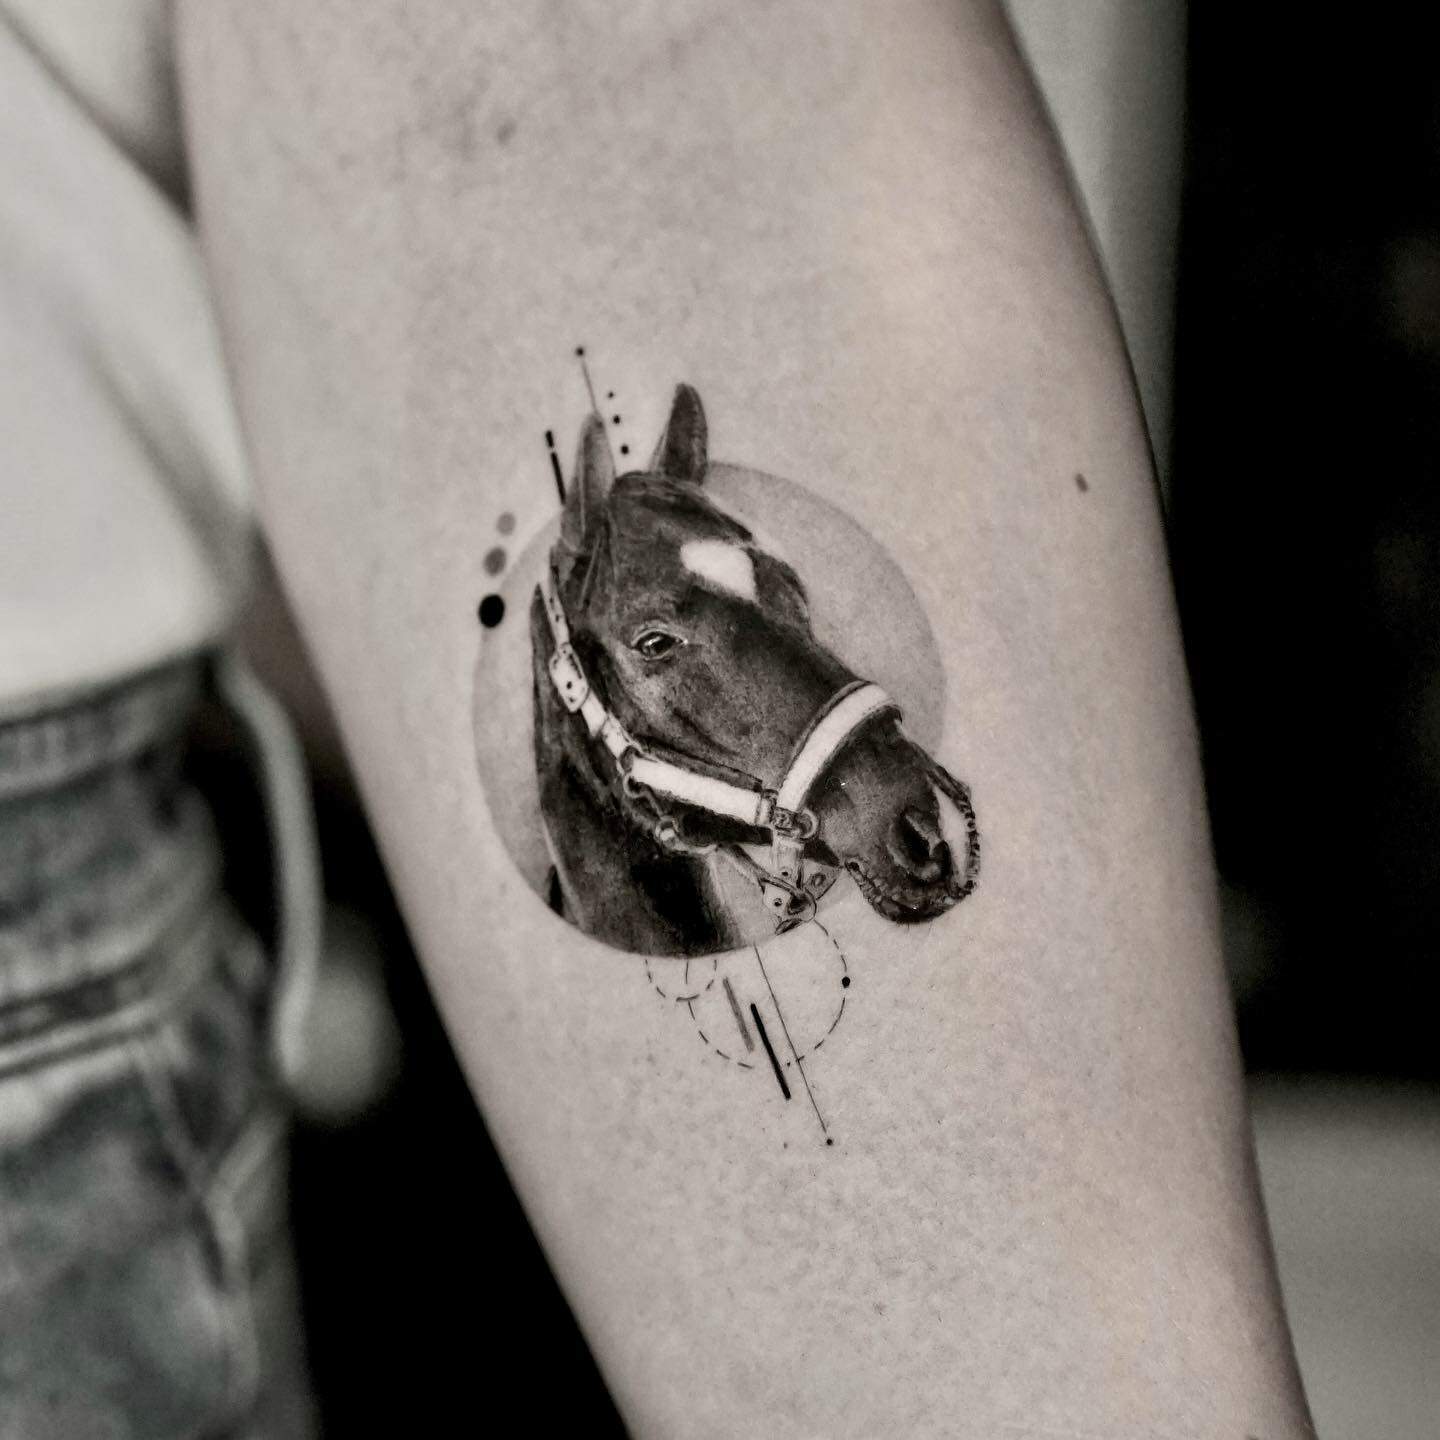 Amazing horse tattoo by mafis tats